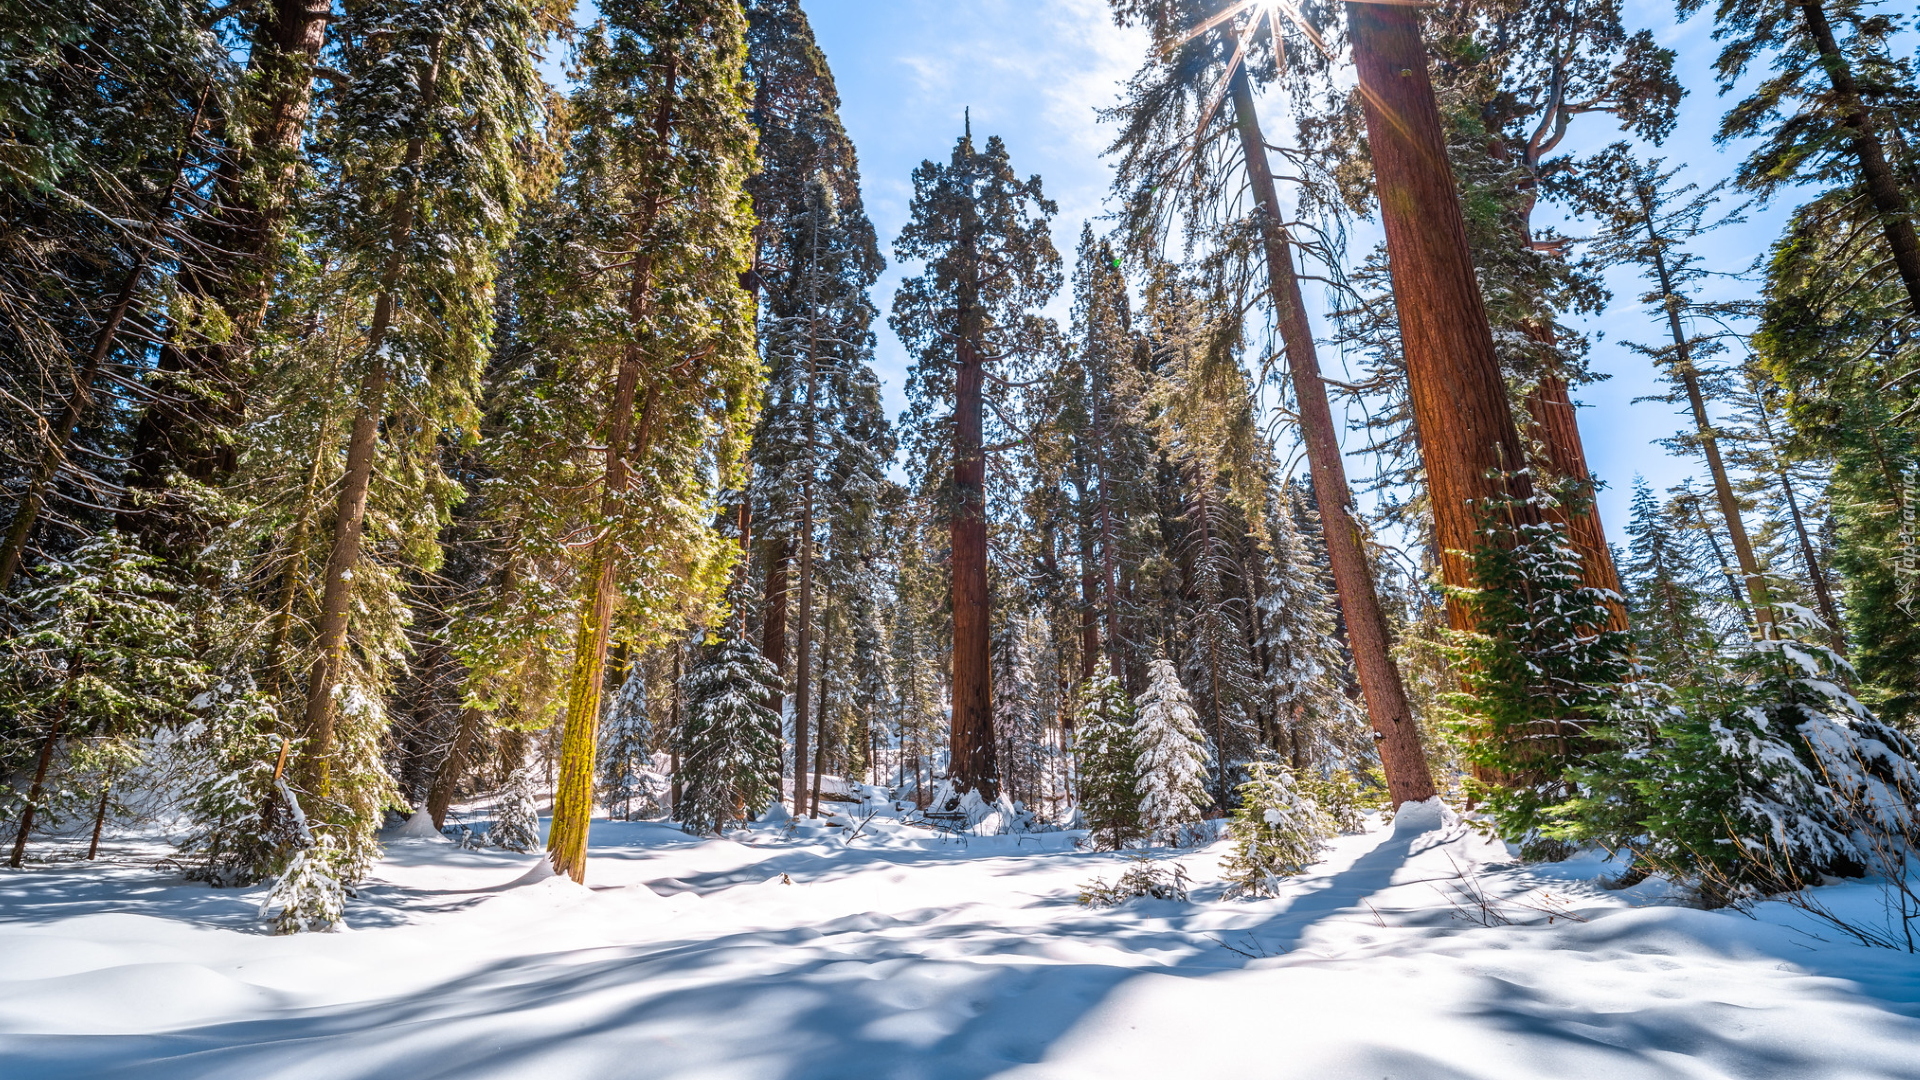 Zima, Las, Drzewa, Sekwoja, General Grant Grove, Promienie słońca, Park Narodowy Kings Canyon, Kalifornia, Stany Zjednoczone